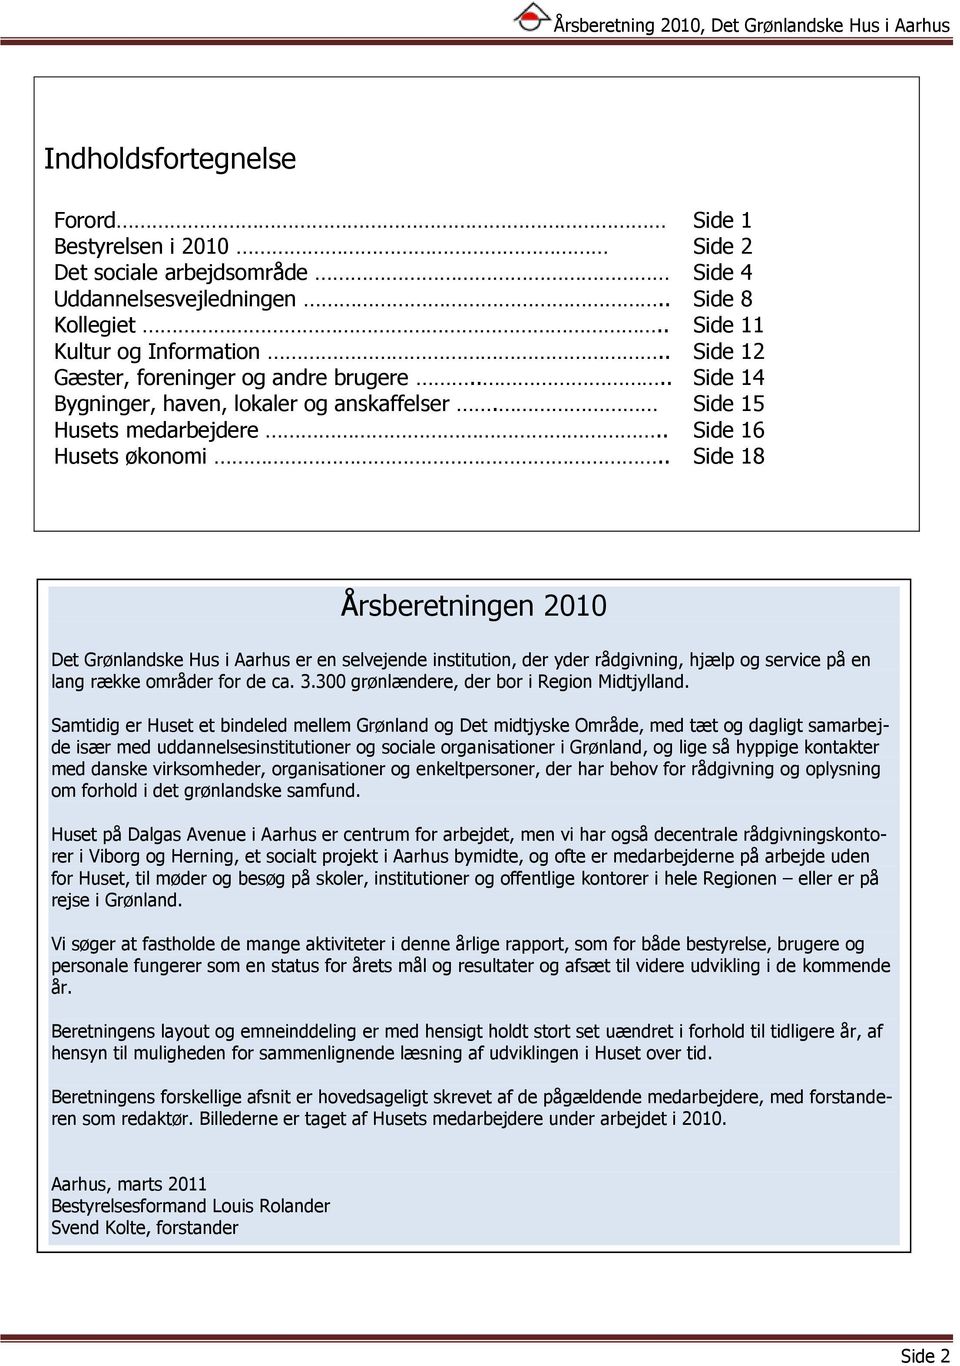 . Side 18 Årsberetningen 2010 Det Grønlandske Hus i Aarhus er en selvejende institution, der yder rådgivning, hjælp og service på en lang række områder for de ca. 3.